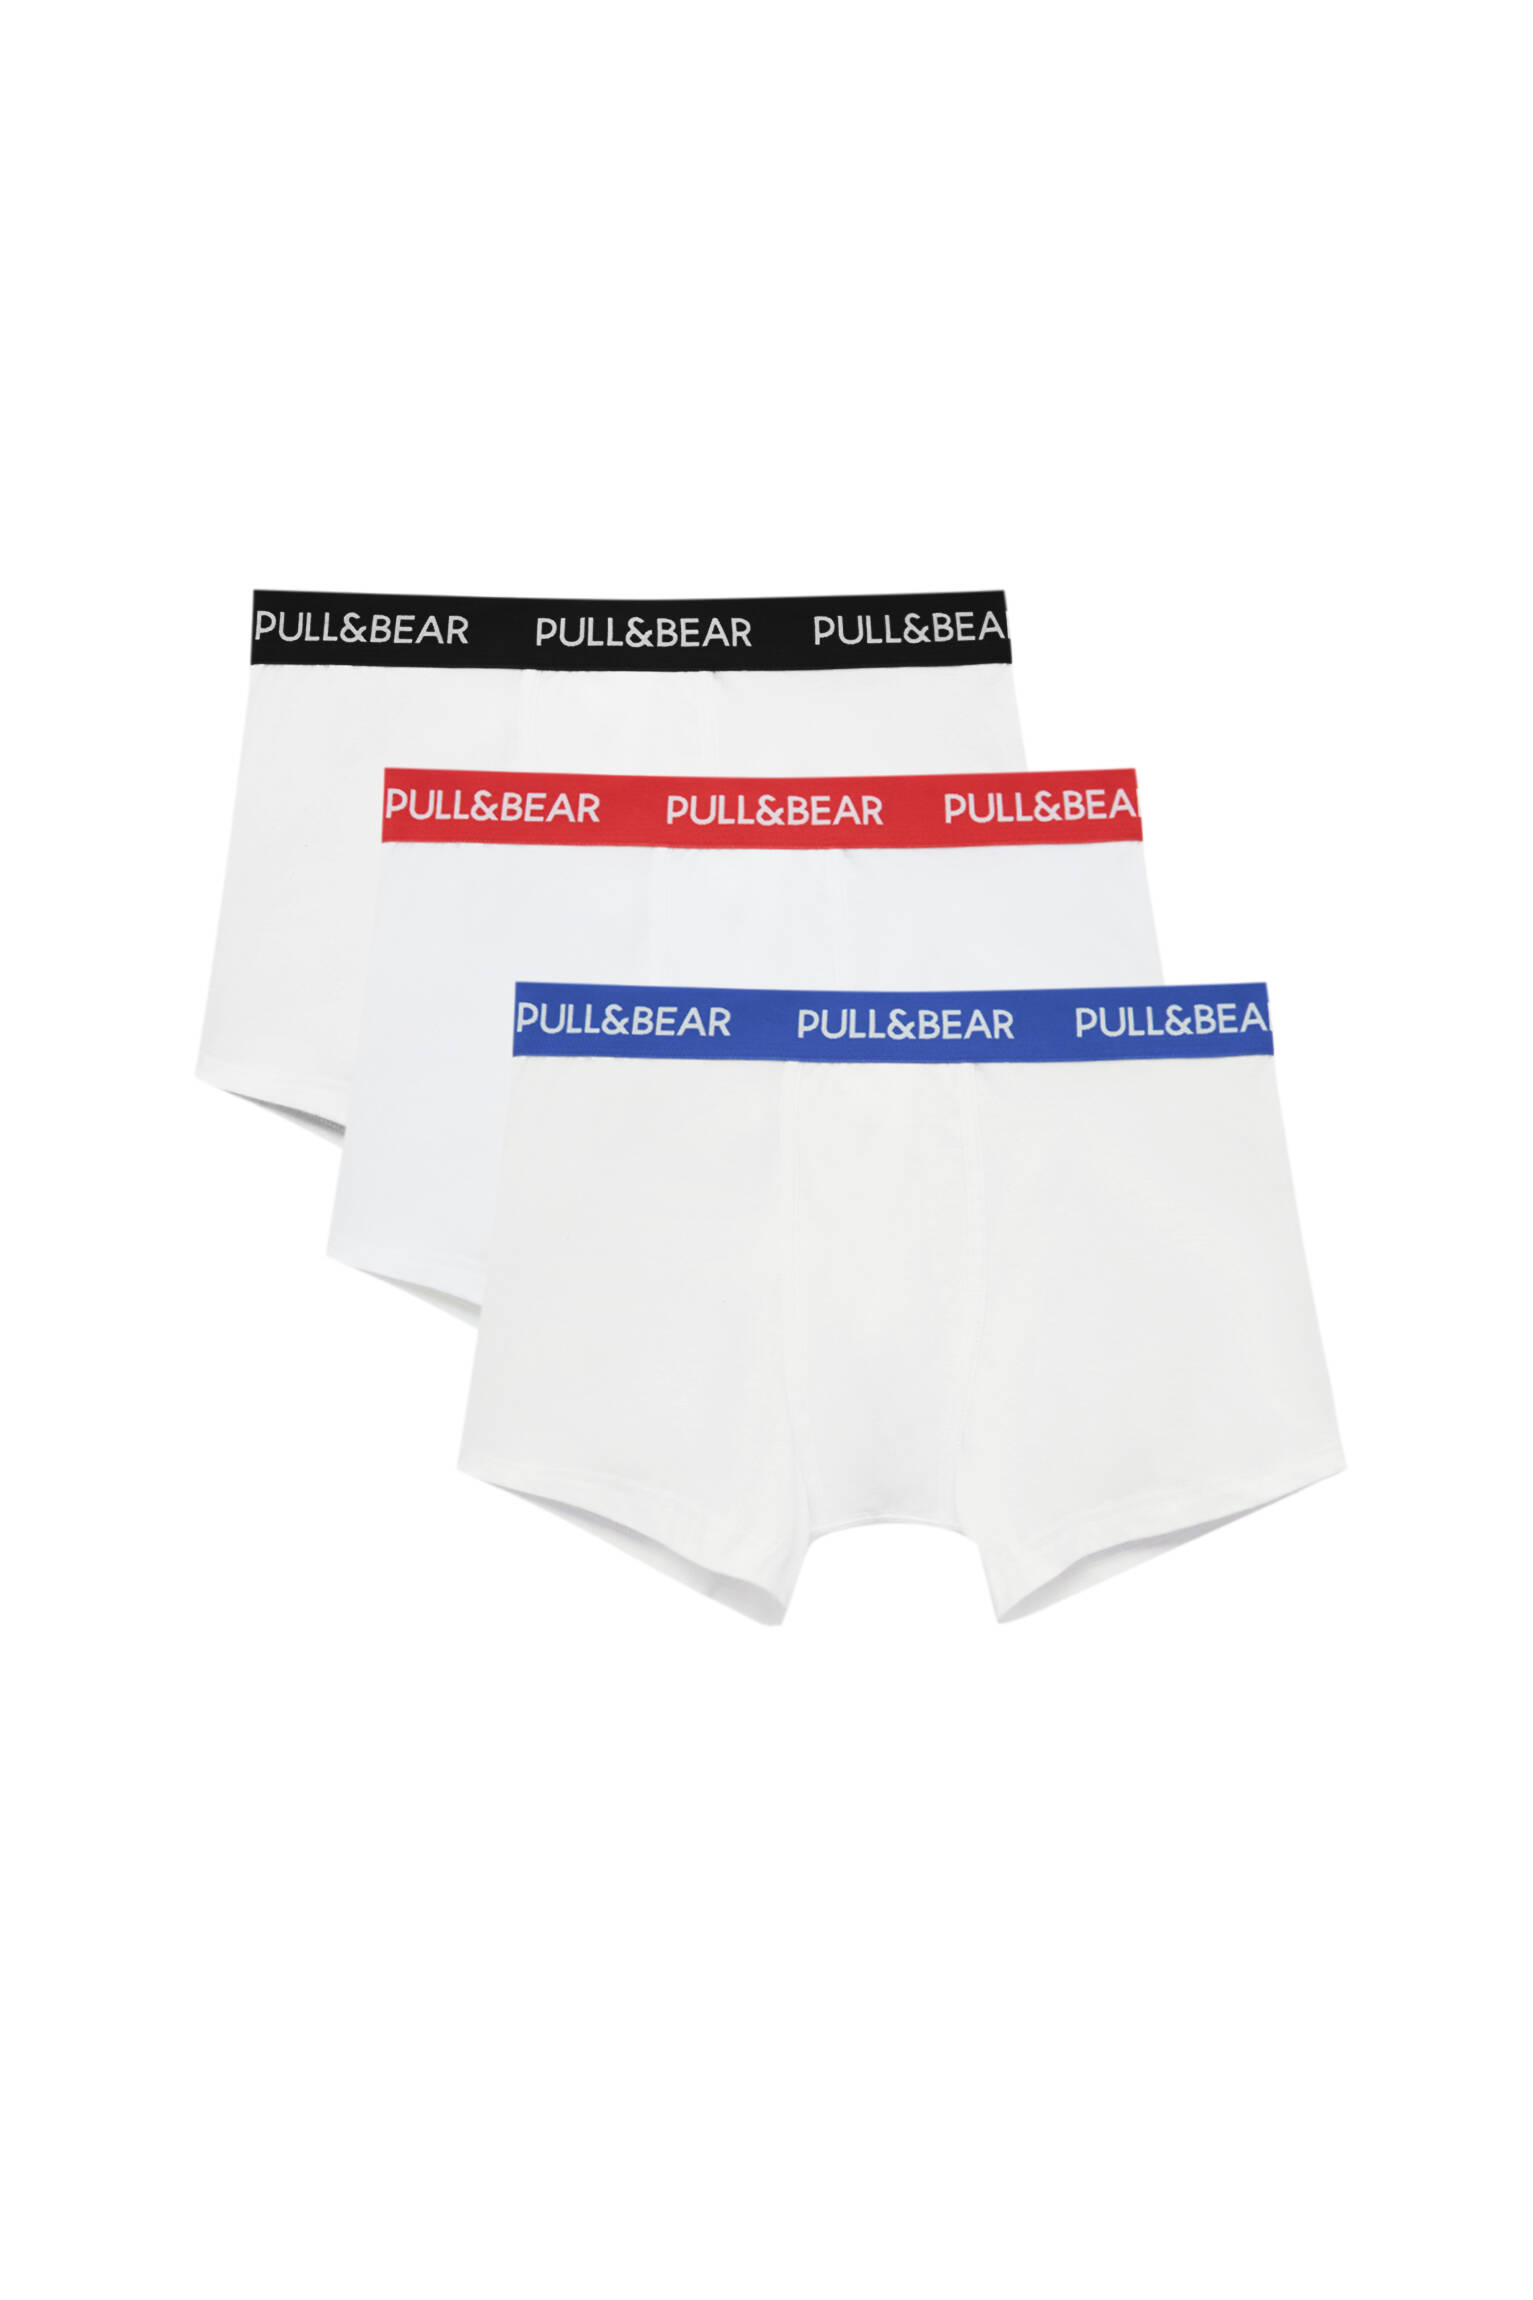 Pull&bear Homme Lot De Trois Boxers Blancs, à Taille Colorée Contrastante Et Avec Logo. Divers S